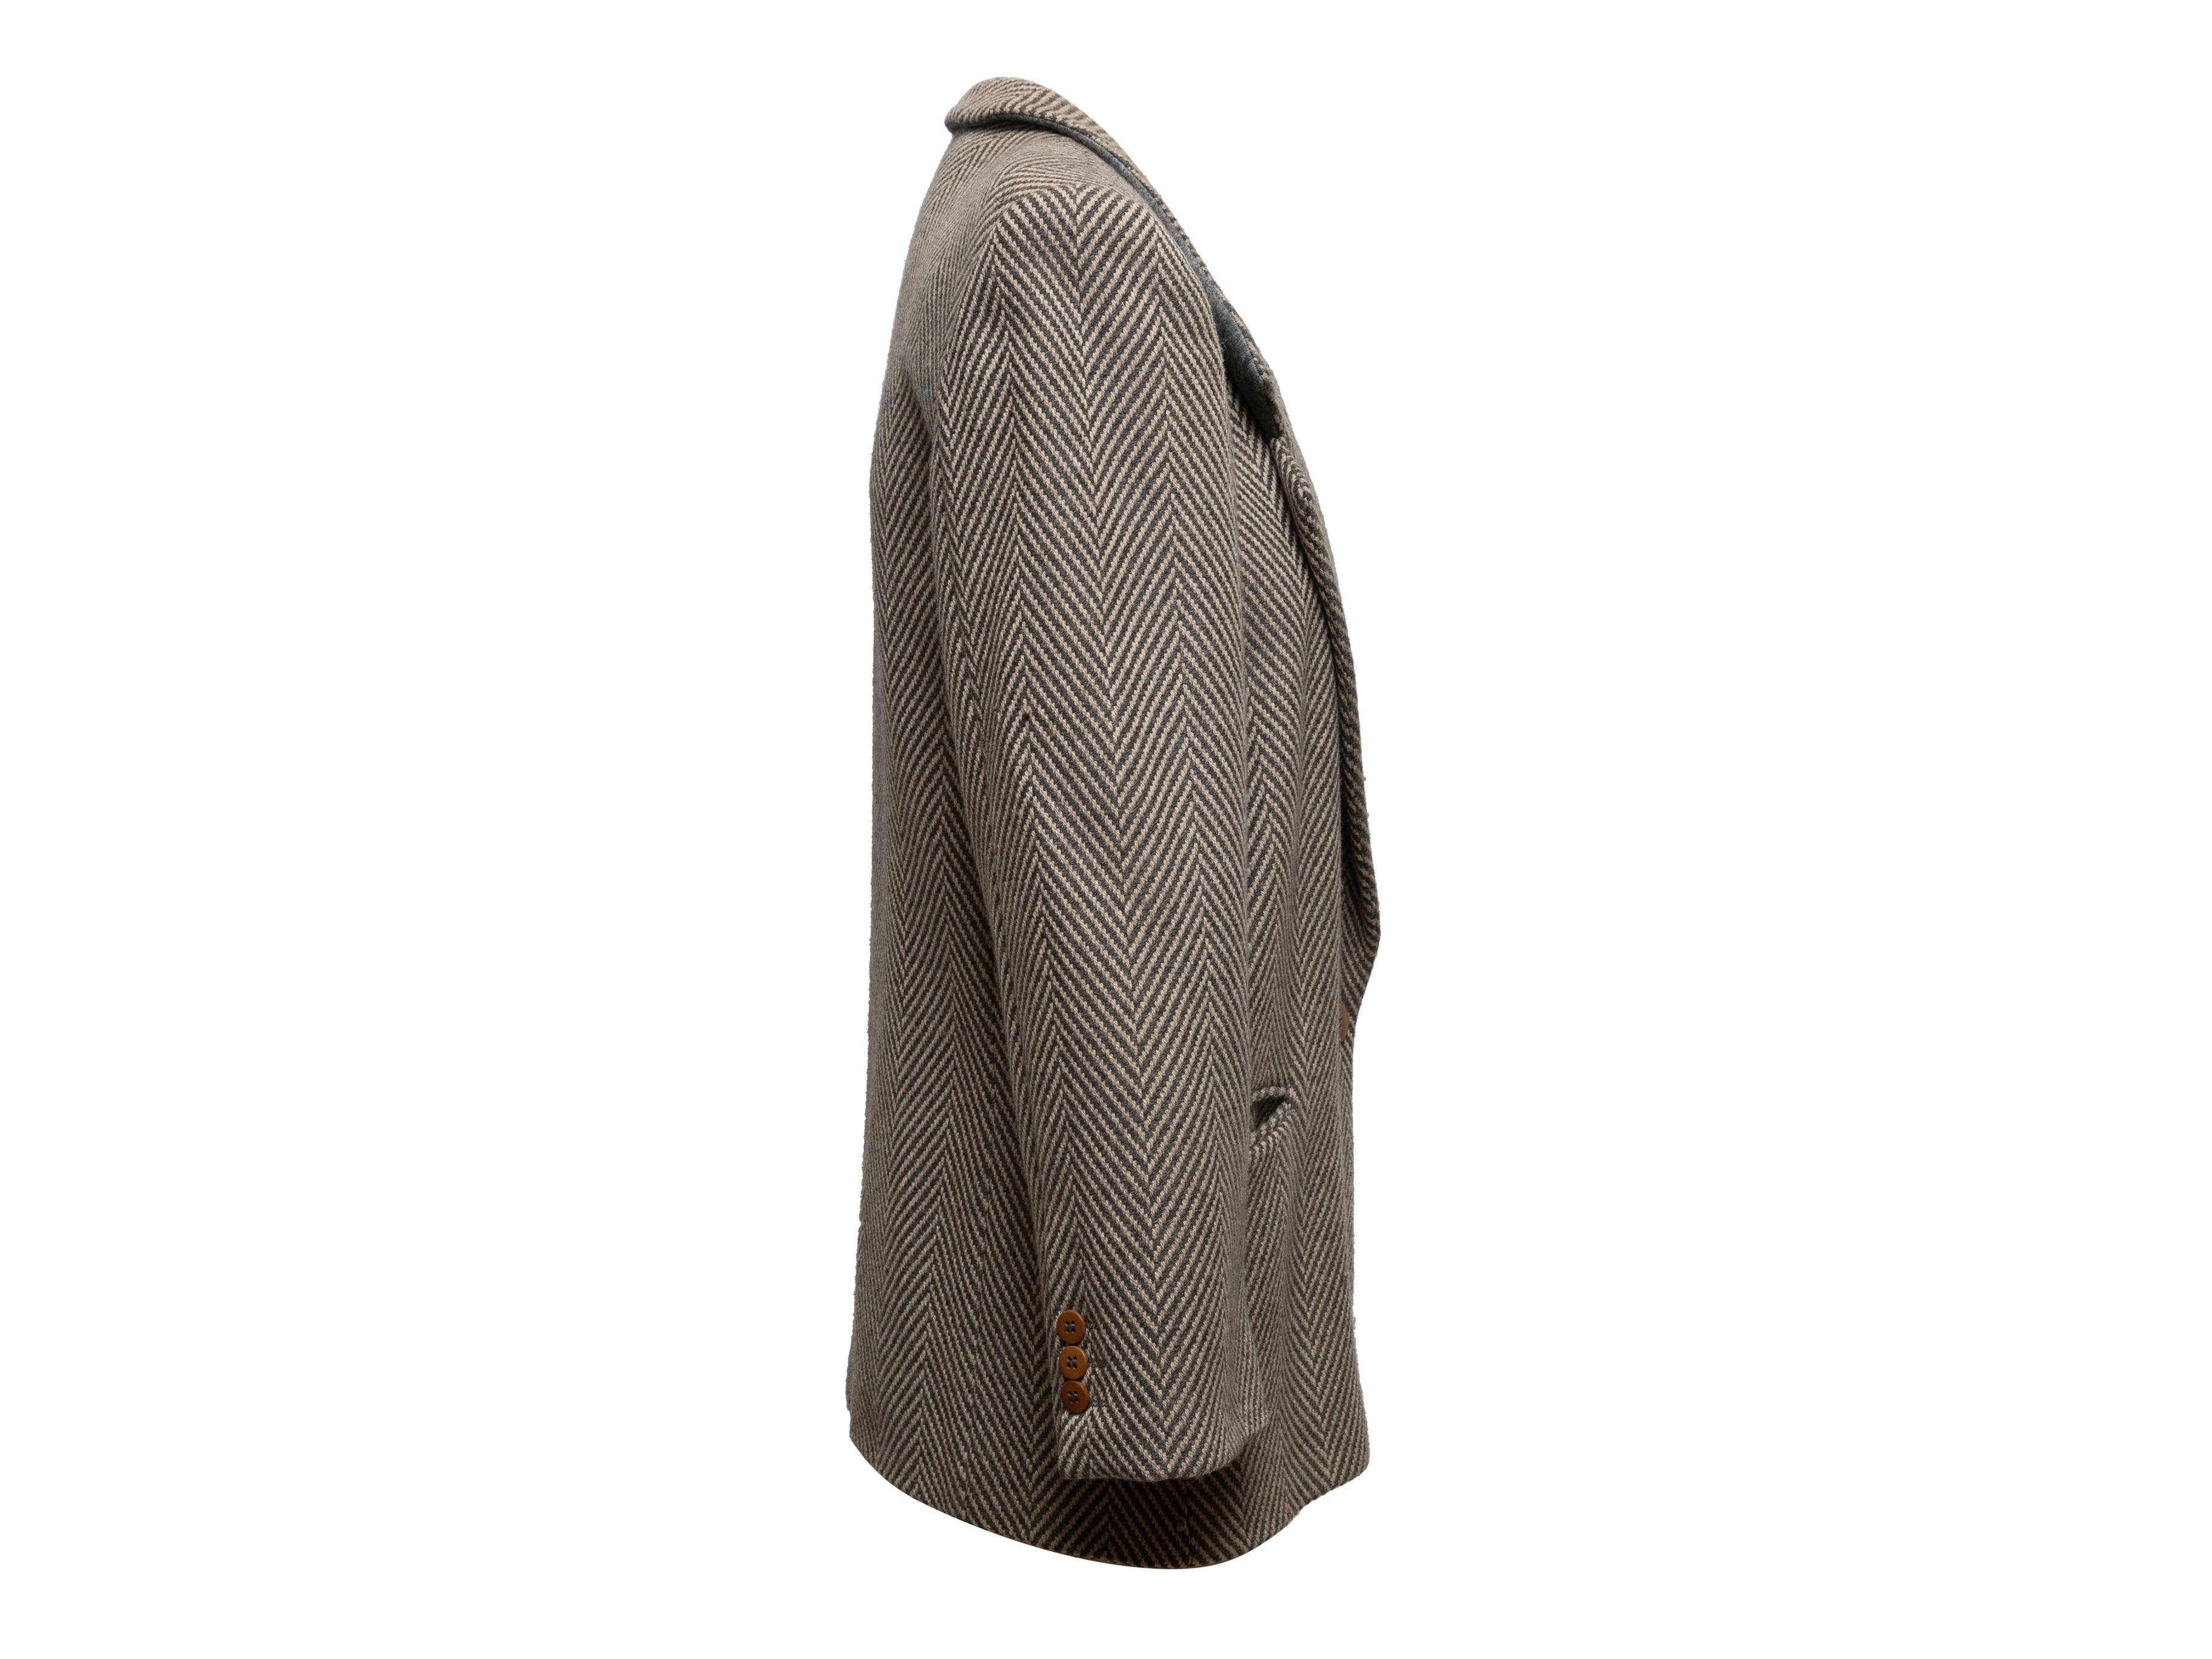 Blazer vintage à chevrons en laine vierge grise et beige de Giorgio Armani. Revers cranté. Trois poches. Fermeture à bouton unique sur le devant. Poitrine 34